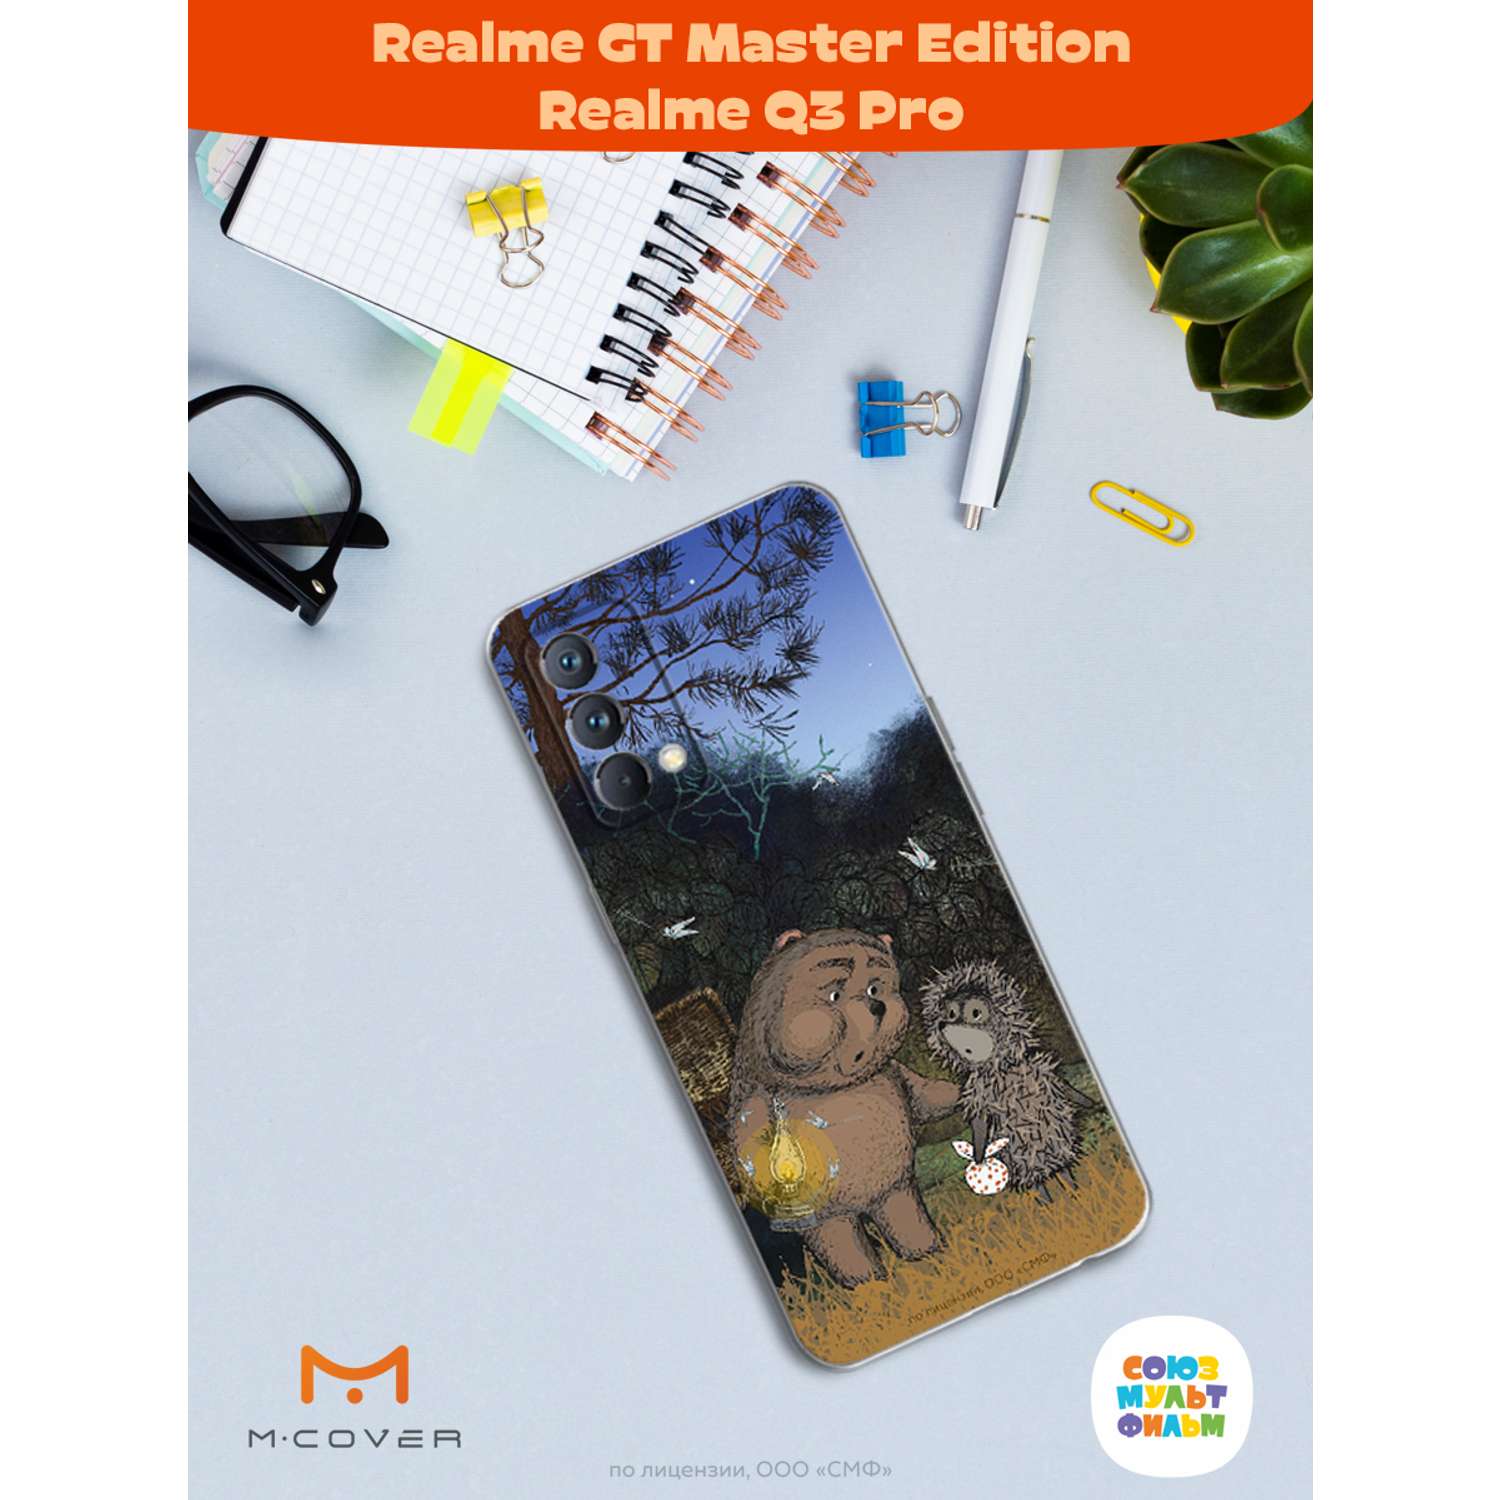 Силиконовый чехол Mcover для смартфона Realme GT Master Edition Q3 Pro Союзмультфильм Ежик в тумане и медвежонок - фото 3